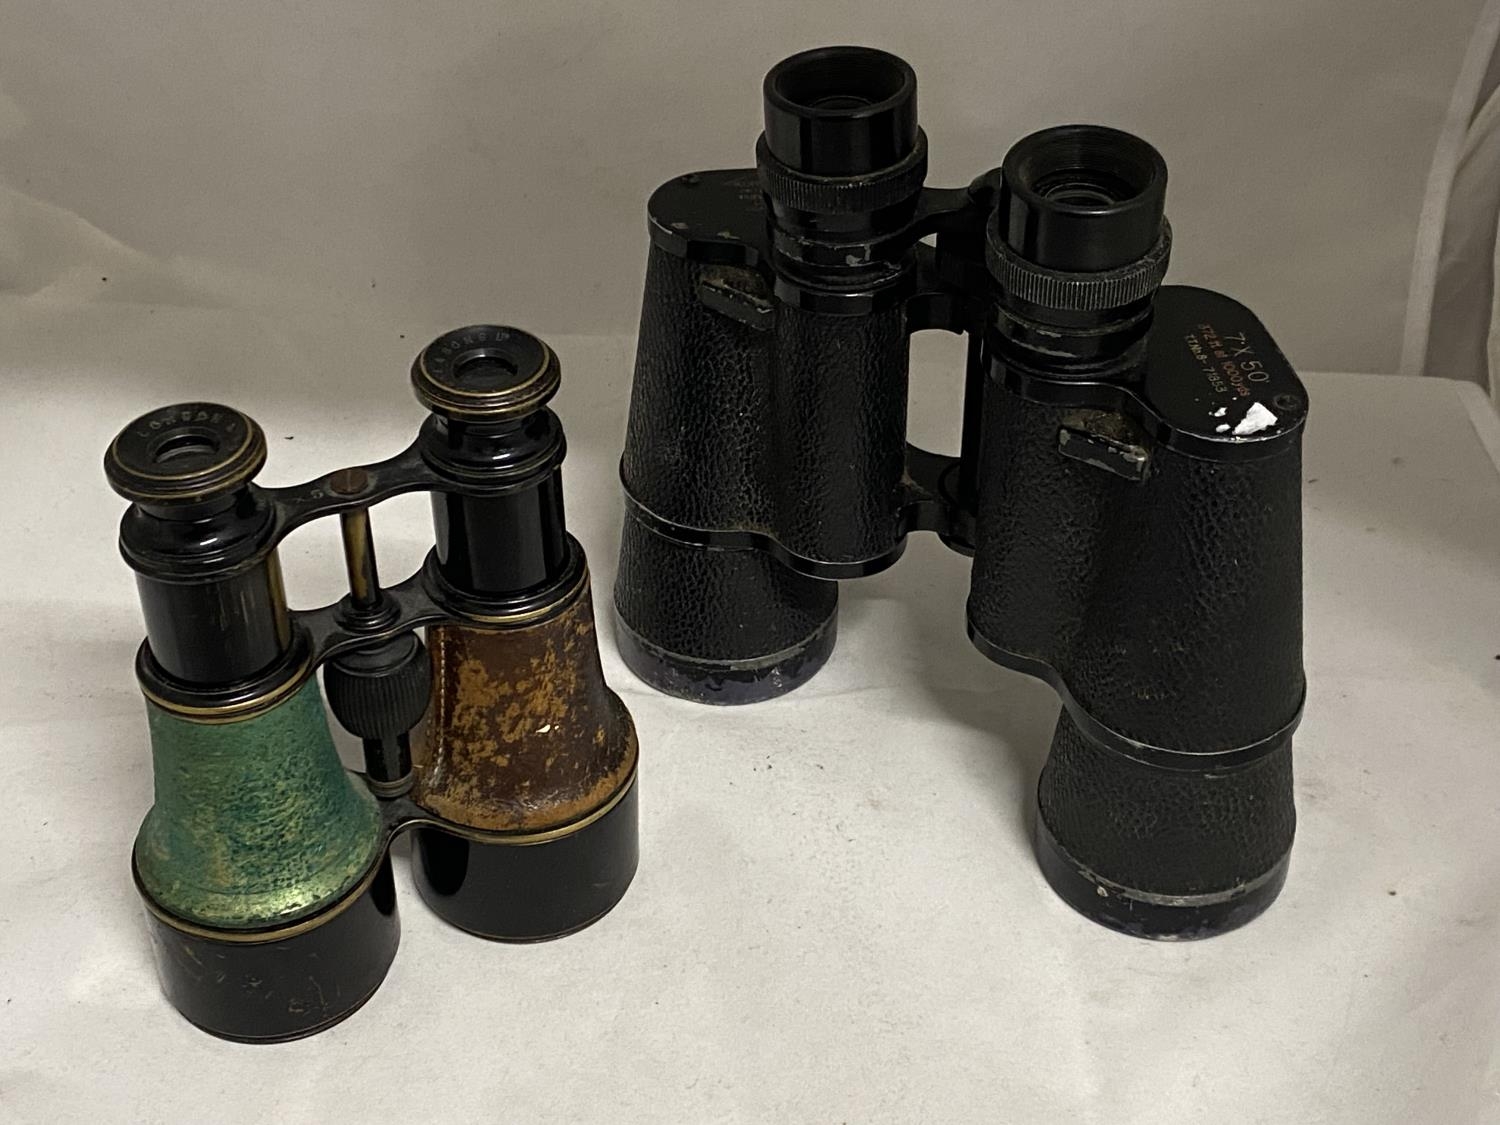 Two pairs of vintage binoculars one by Kurt Muller